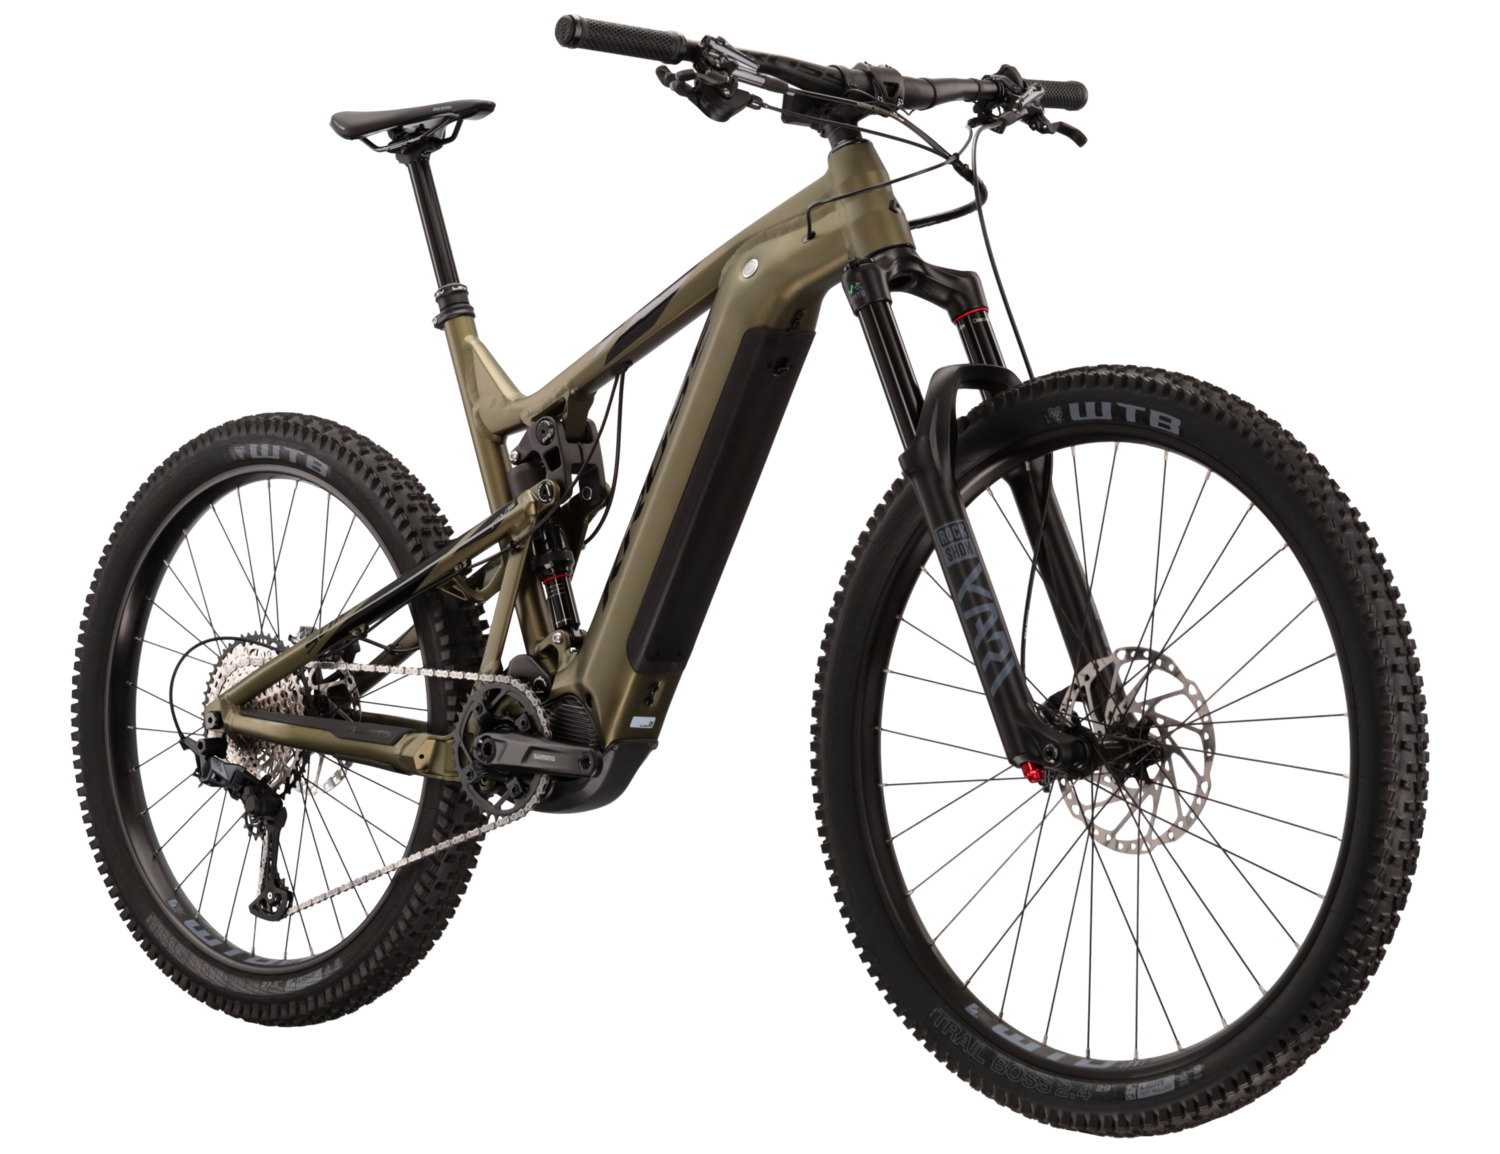  Elektryczny rower górski Ebike MTB XC Full Suspension KROSS Soil Boost 2.0 630 Wh na aluminiowej ramie w kolorze zielonym wyposażony w osprzęt Shimano i napęd elektryczny Shimano